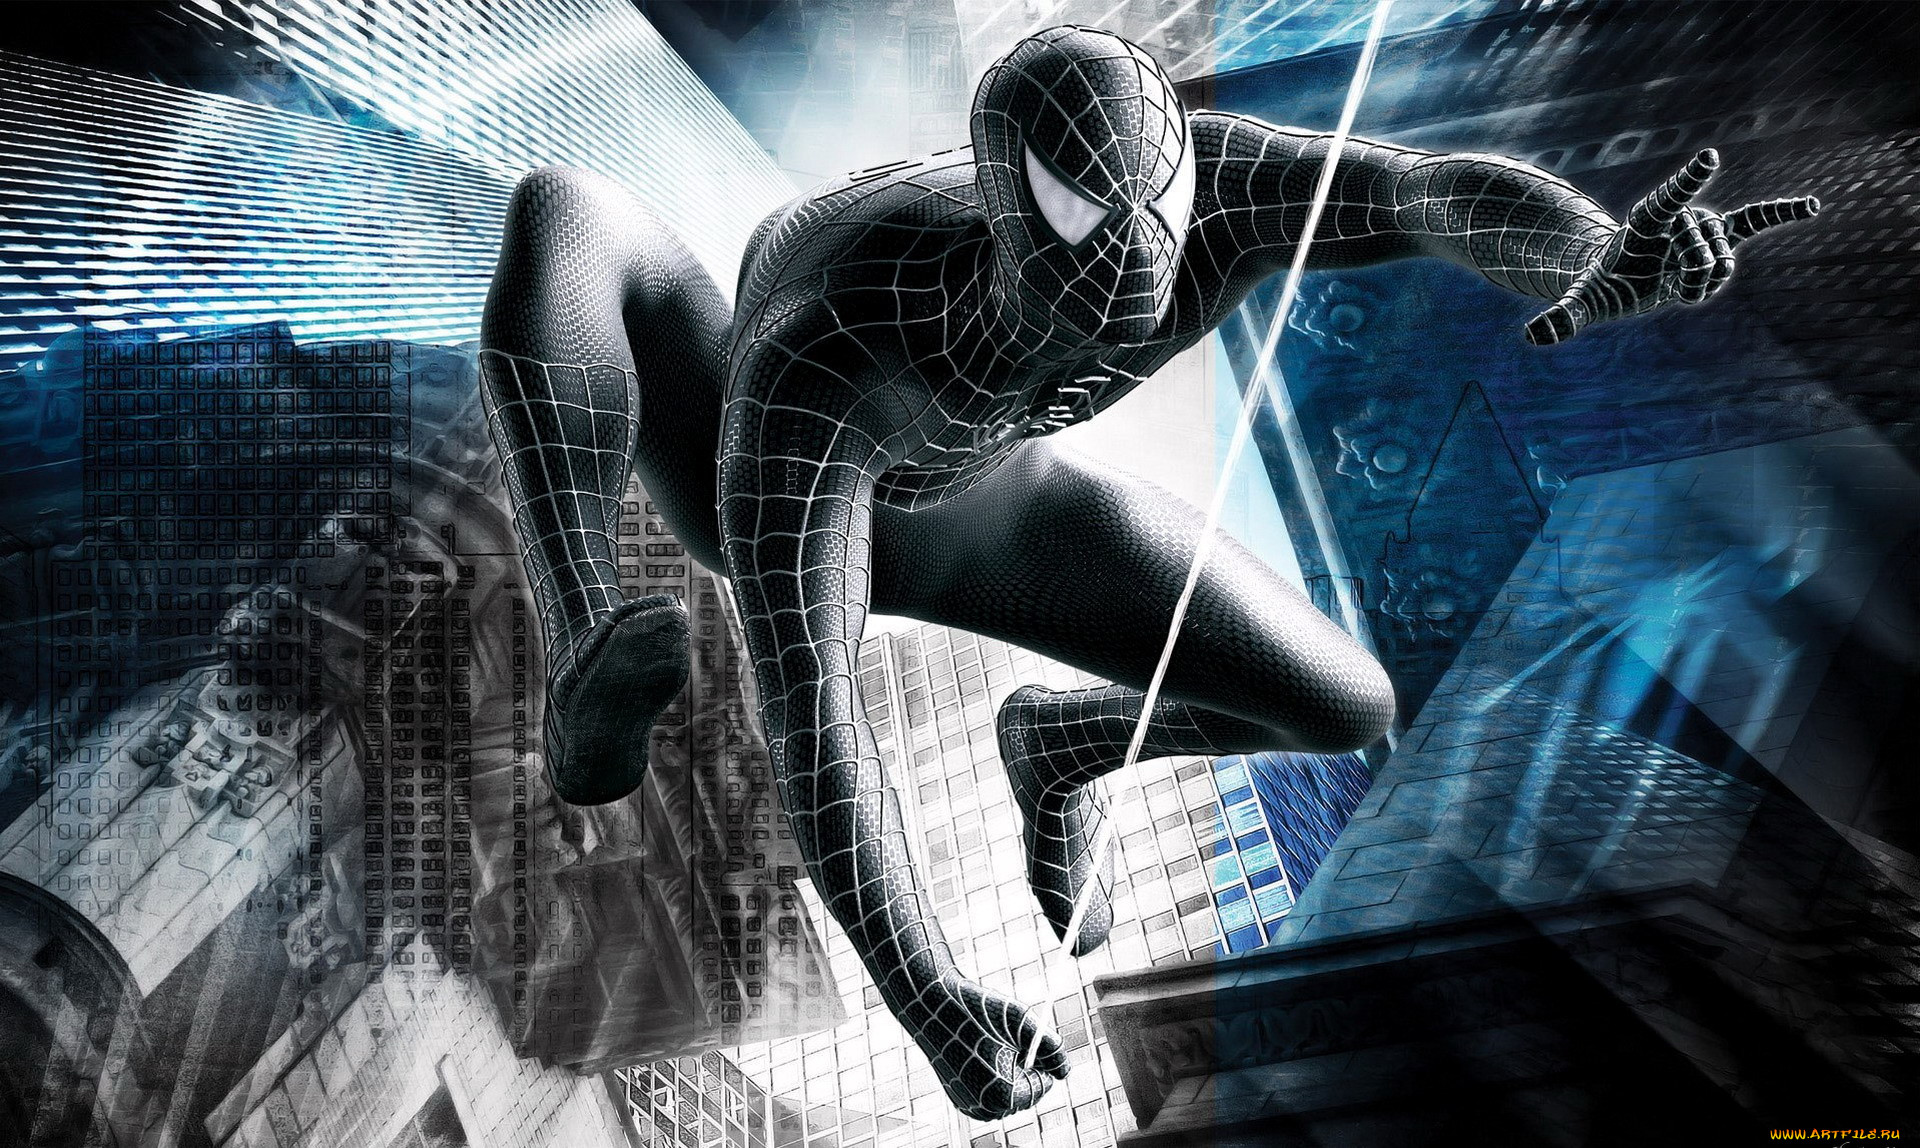 Обои Видео Игры Spider-Man 3, обои для рабочего стола, фотографии видео  игры, spider-man 3, человек-паук, черный, паутина, здания Обои для рабочего  стола, скачать обои картинки заставки на рабочий стол.